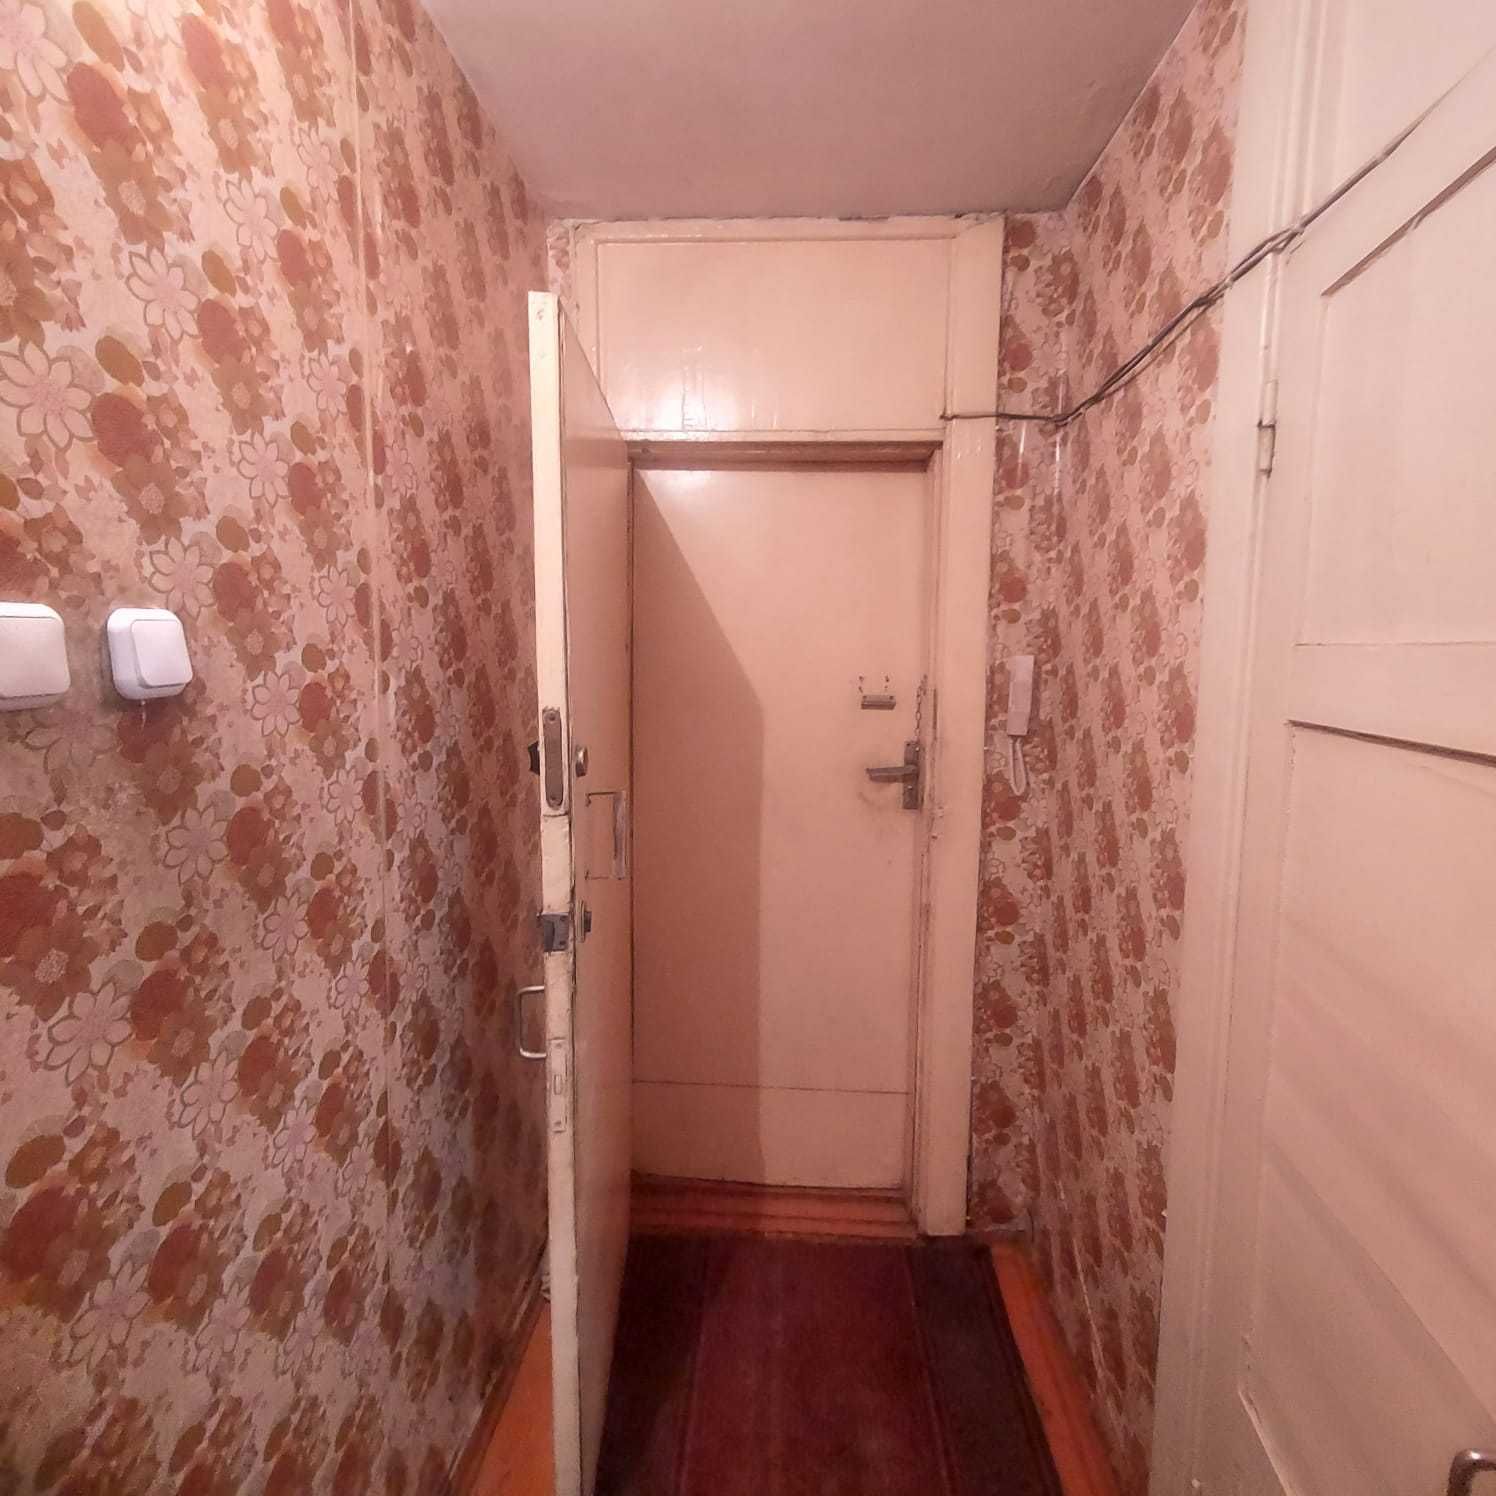 Продам 1 комнатную квартиру в спальном районе города на Ержанова.